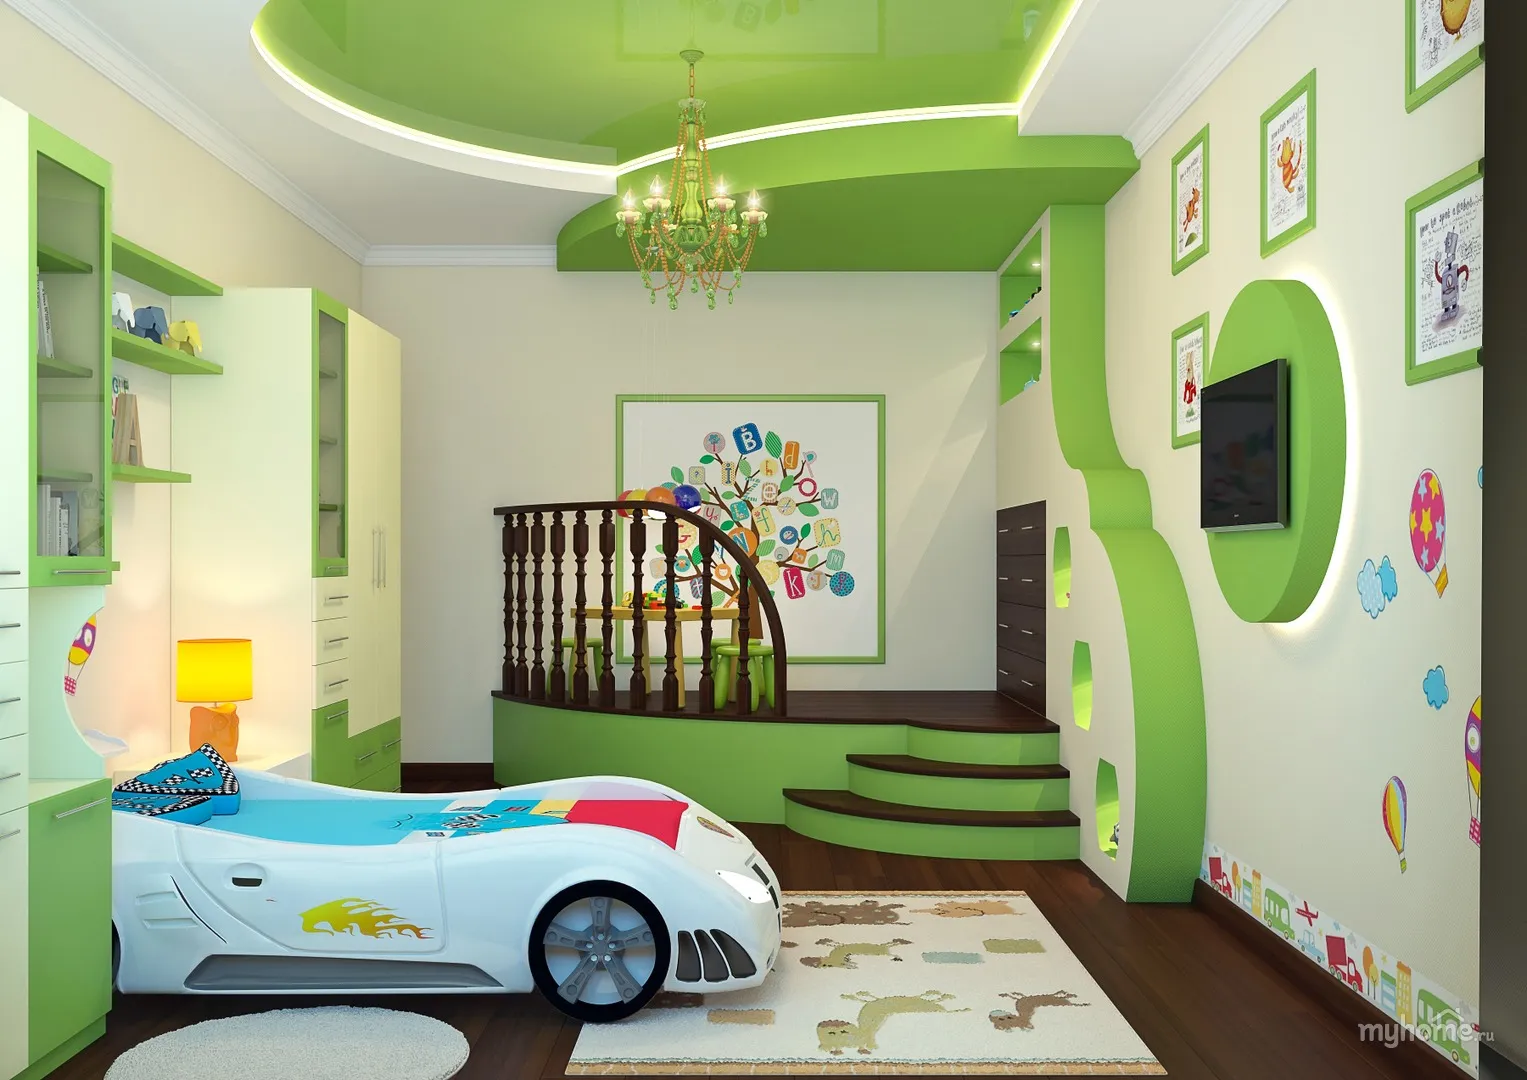 Потолки из гипсокартона в детской комнате: фото, как сделать двухуровневые, дизайн